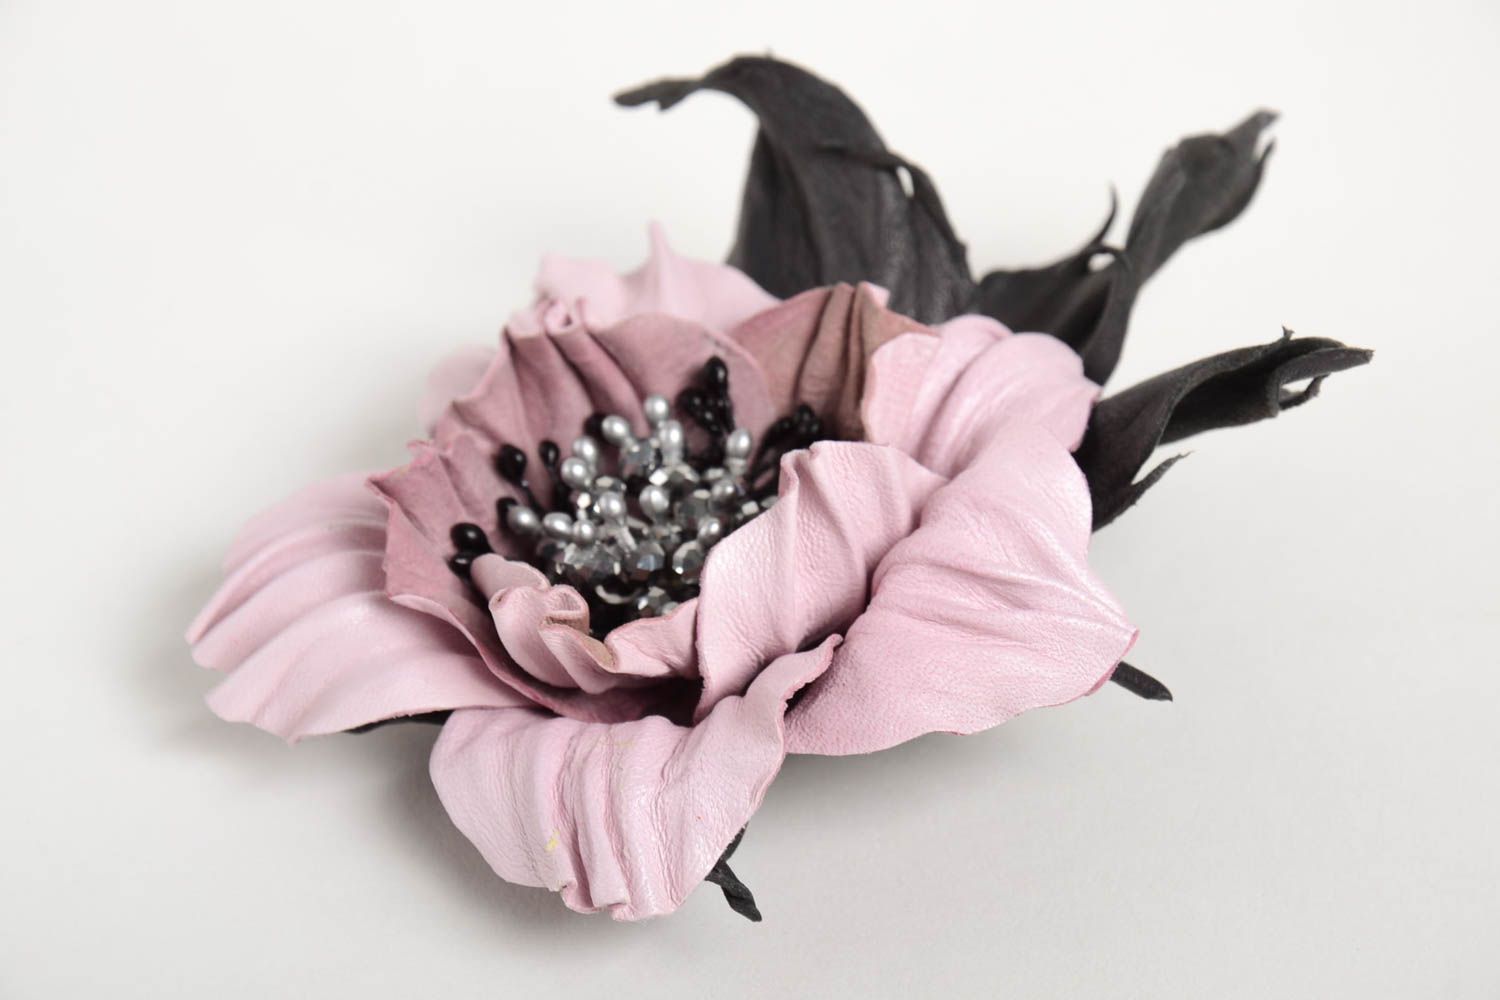 Handmade brooch designer brooch unusual accessory gift ideas flower brooch photo 2